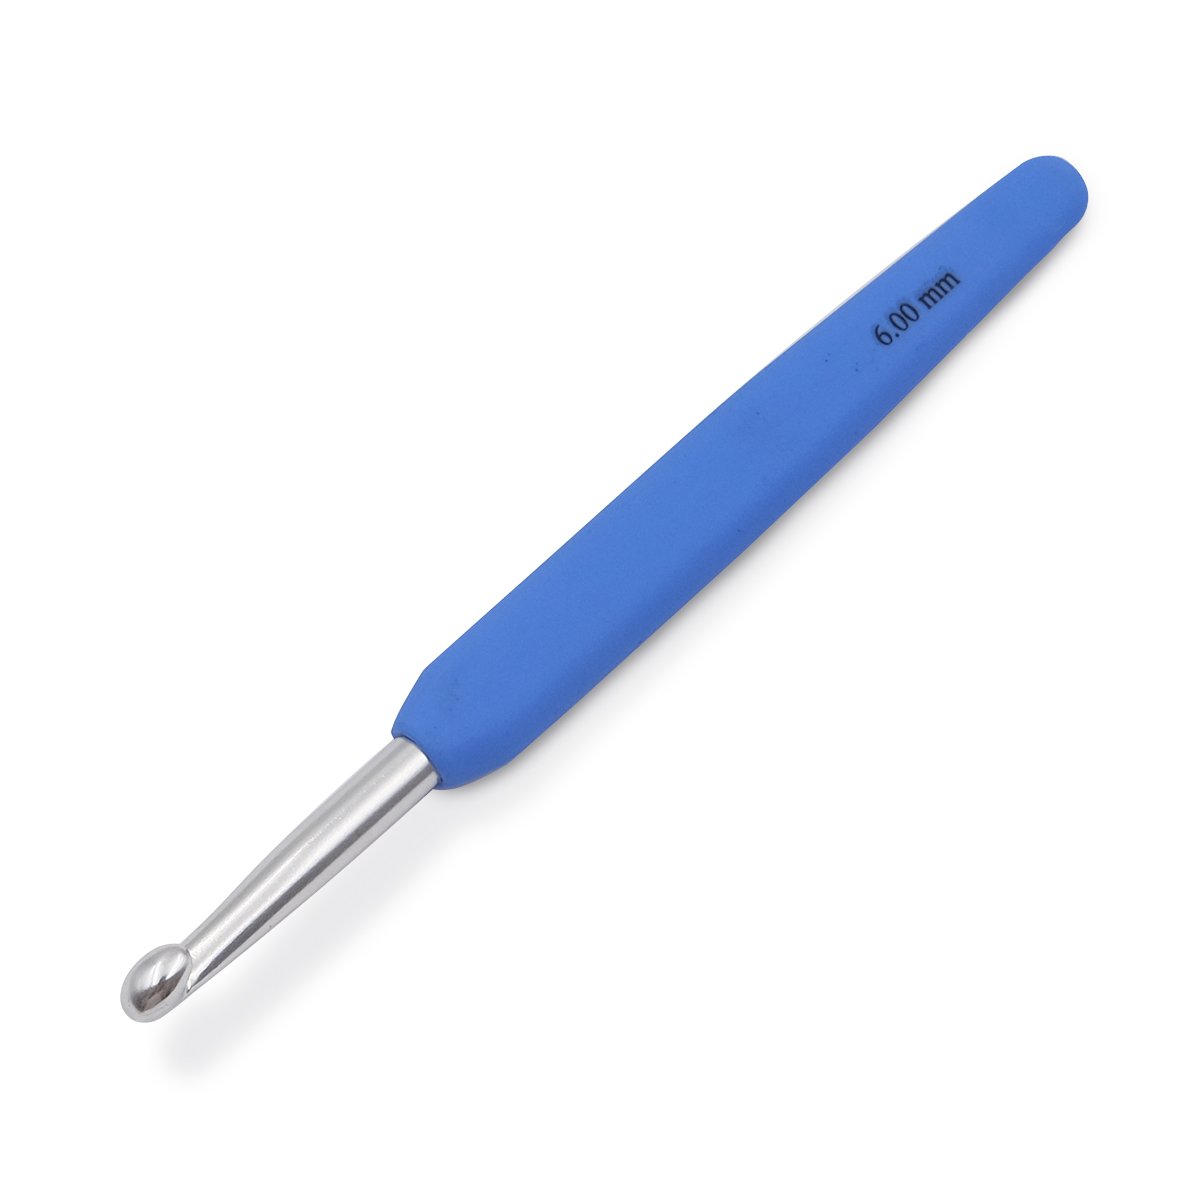 Крючок для вязания с эргономичной ручкой Waves 6мм, алюминий, серебро/колокольчик, KnitPro